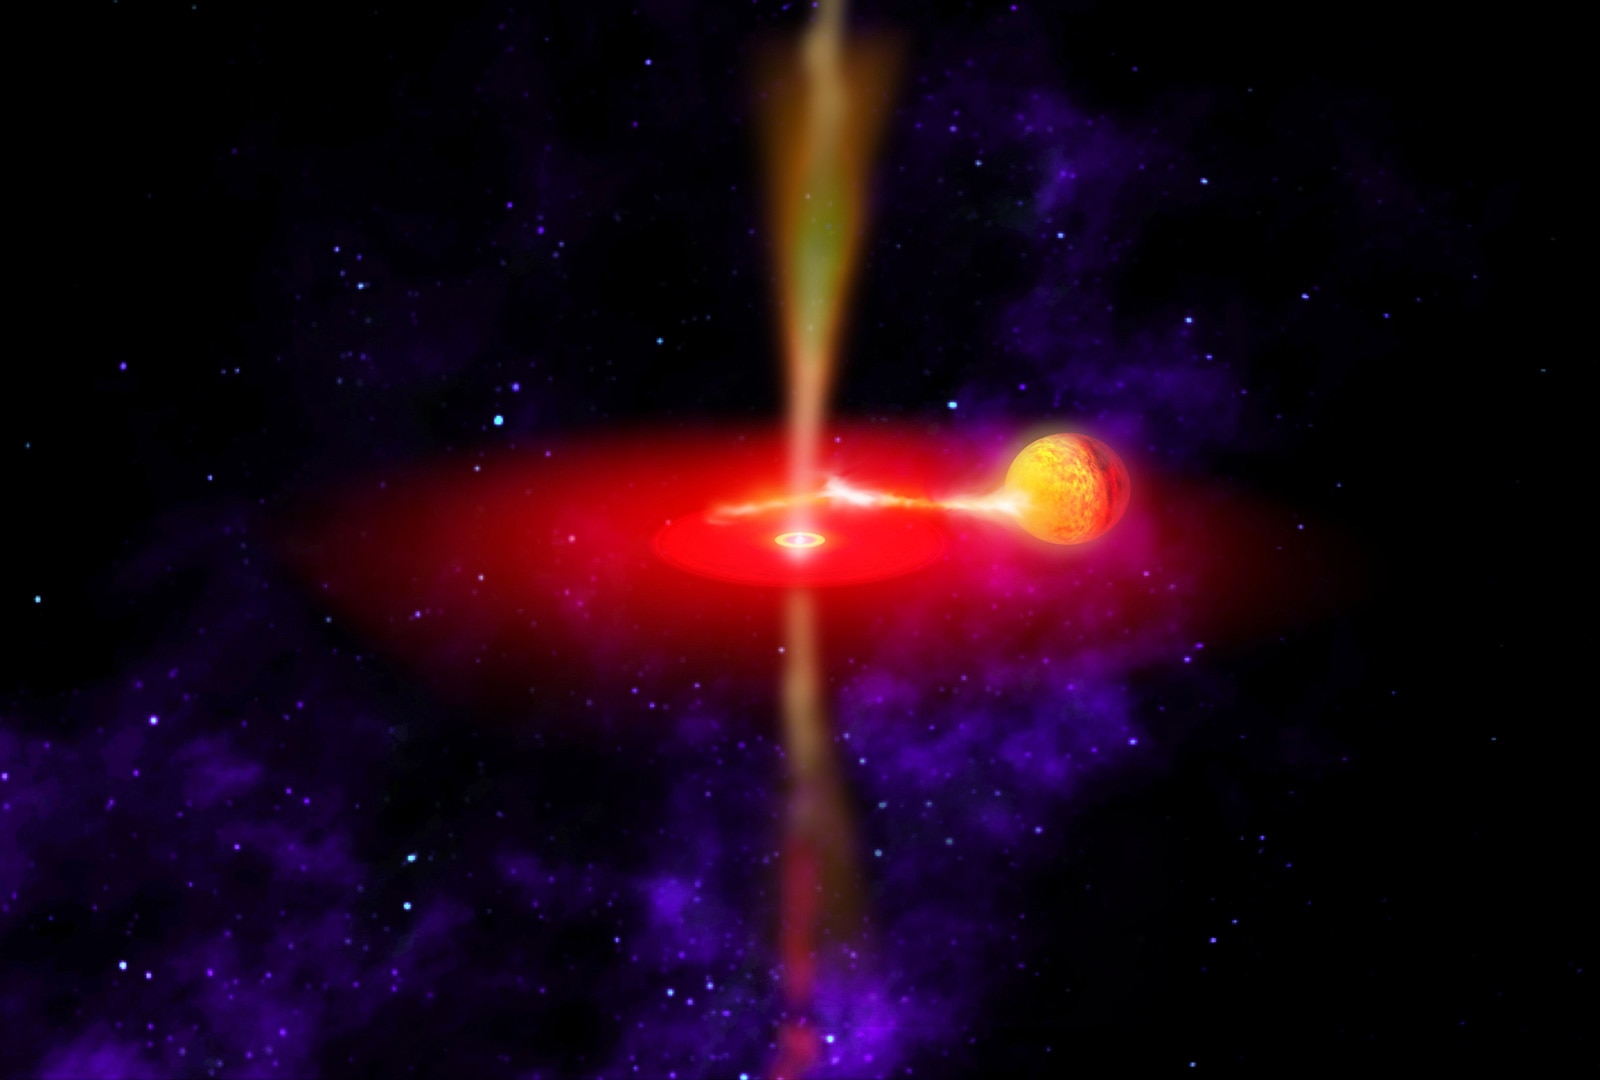 Imagen Recreacion NASA agujero negro conferenccia sobre agujeros negros fundación bbva imagen nasa